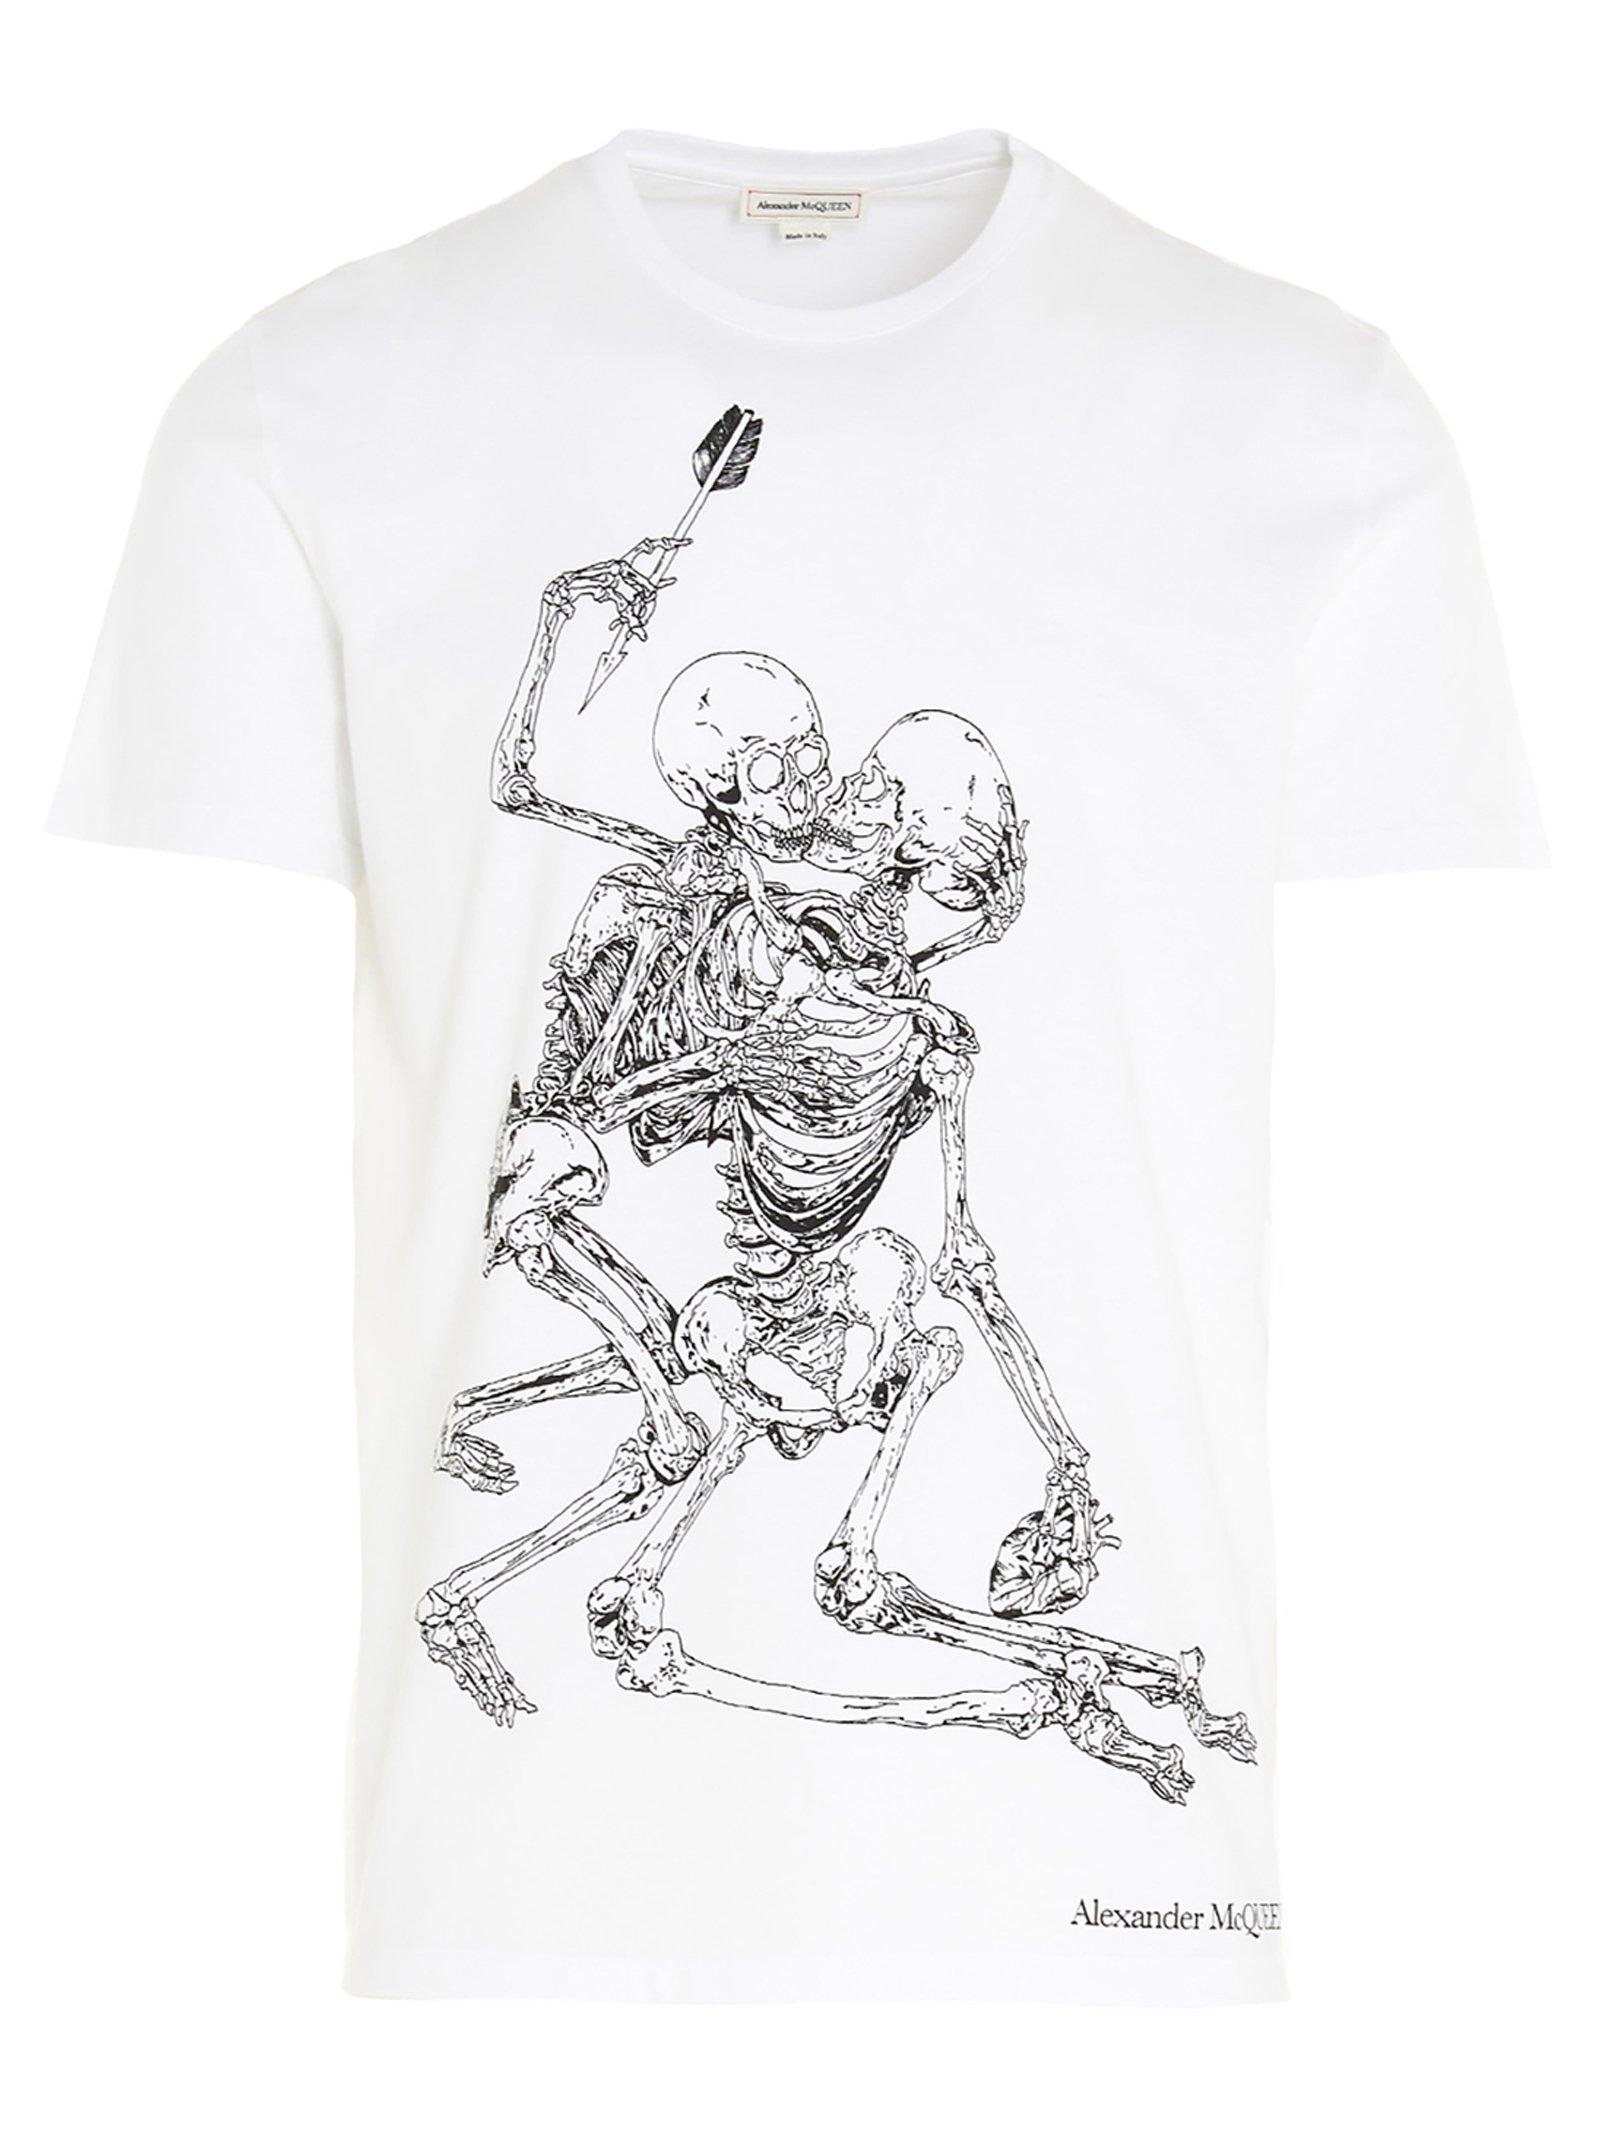 Alexander McQueen Cotton Skeleton T-shirt in White for Men - Lyst